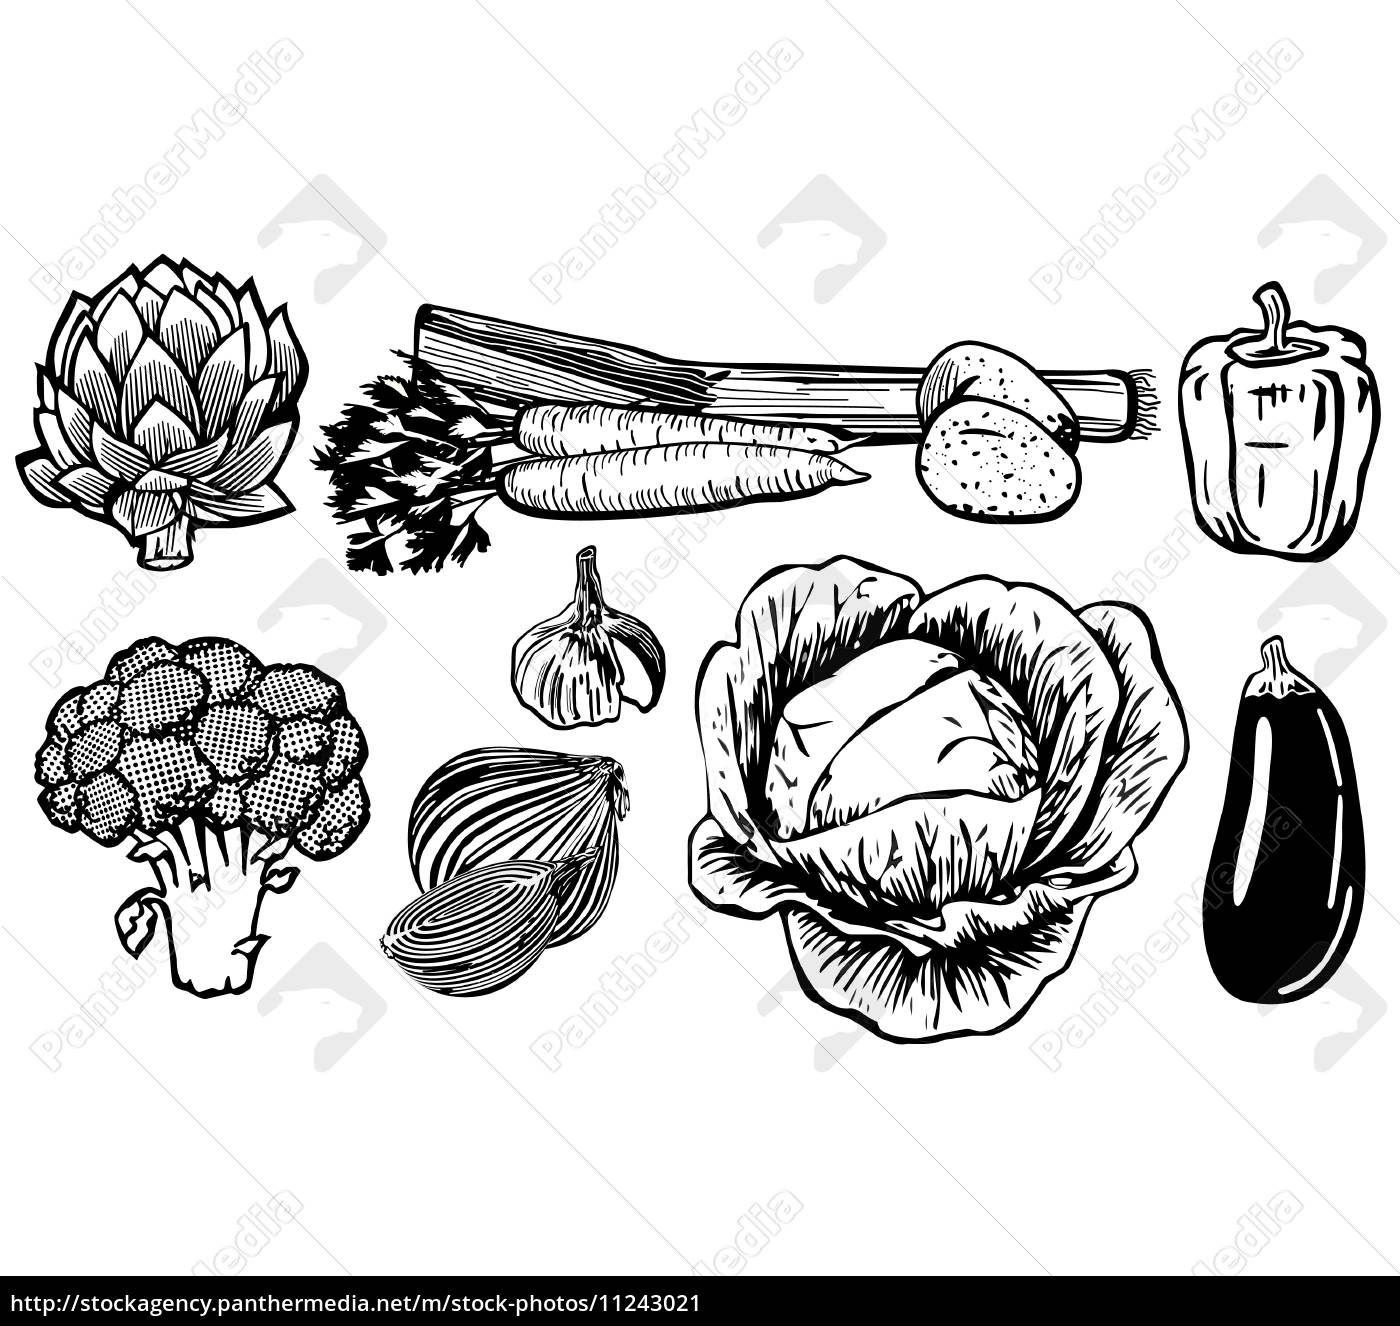 Desenho vegetal - Fotos de arquivo #11243021